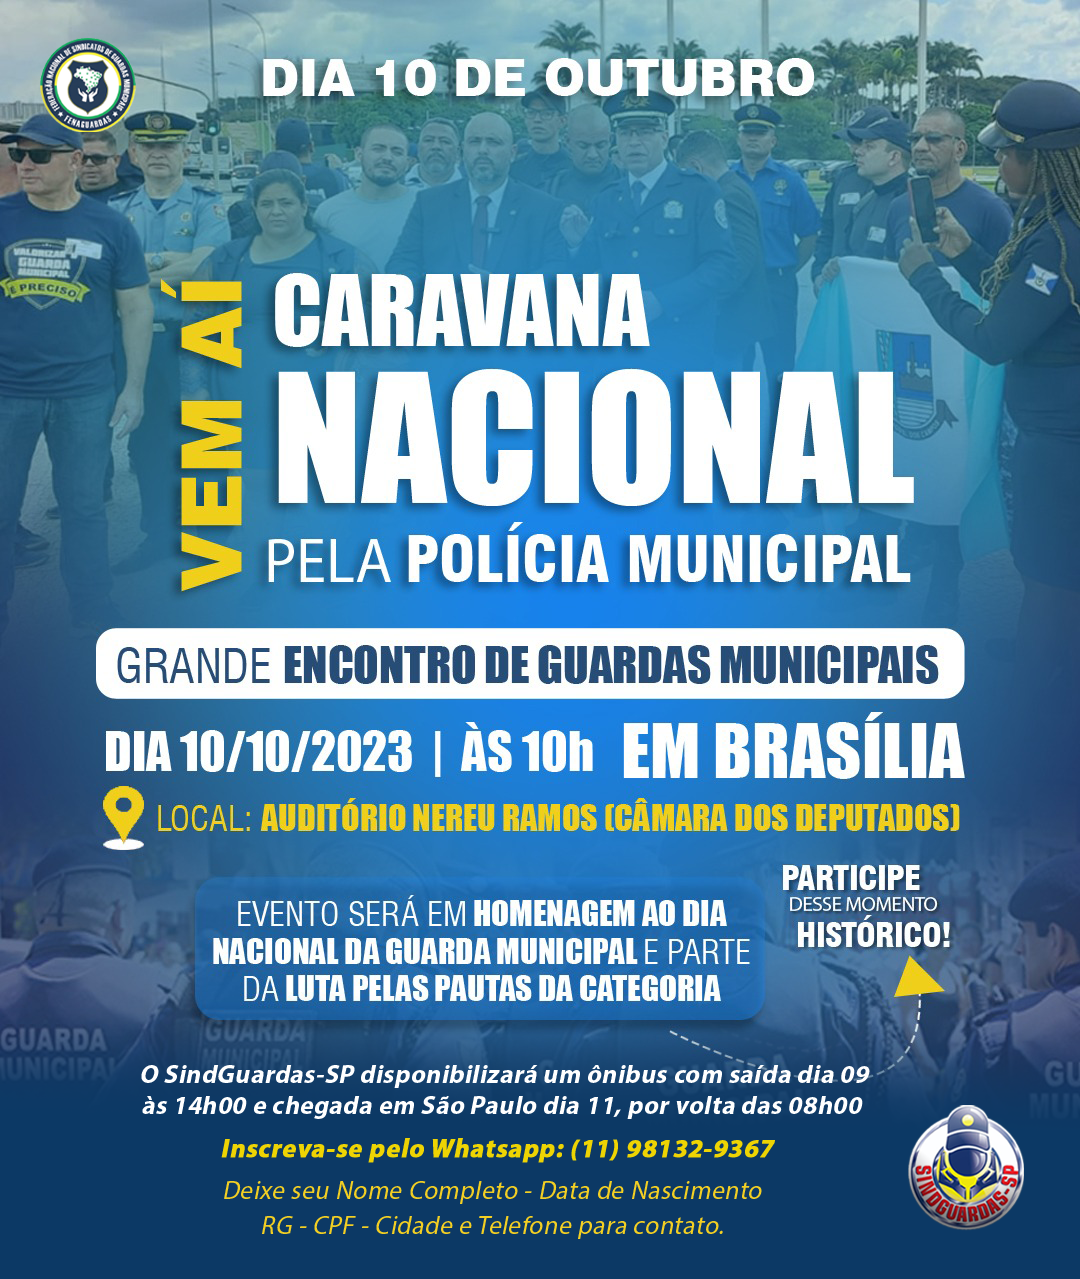 CARAVANA NACIONAL PELA POLÍCIA MUNICIPAL EM BRASÍLIA